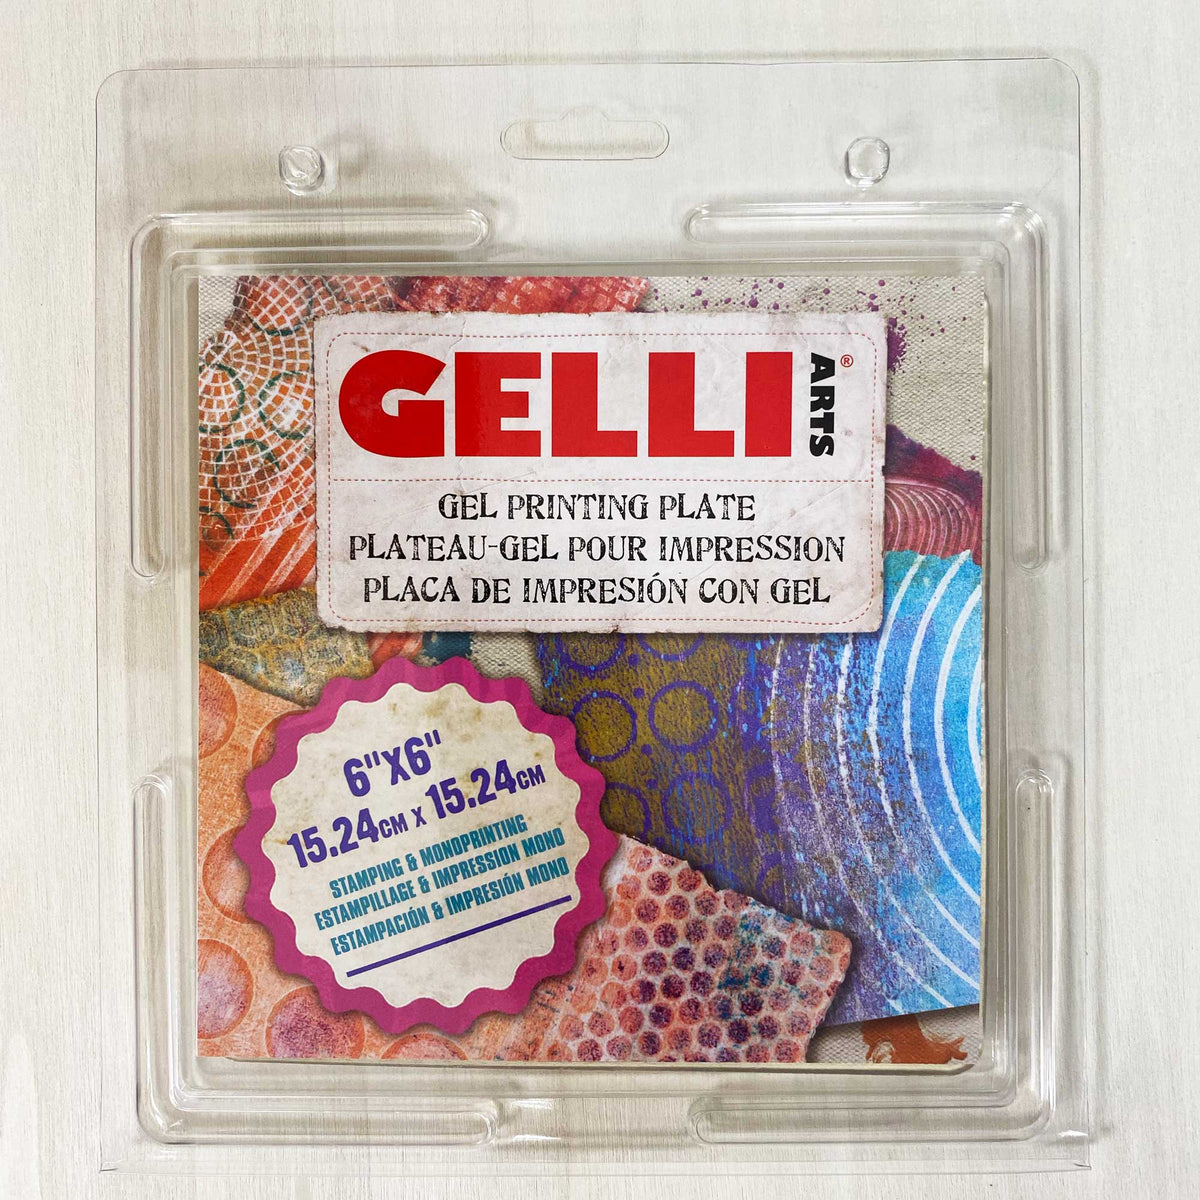 Gelli Arts - Gel Printing Plates - 6x6 inches